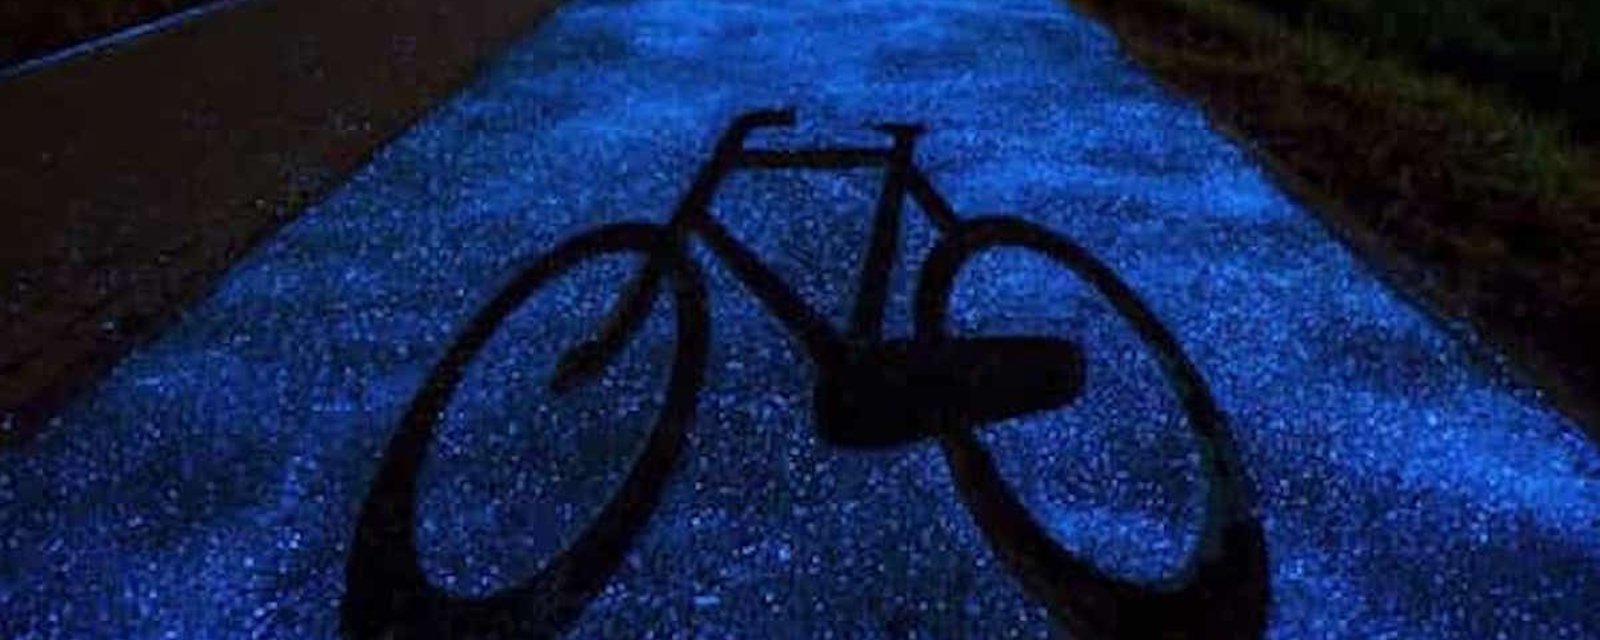 Les pistes cyclables qui s'illuminent dans le noir: une idée qui fait son chemin!